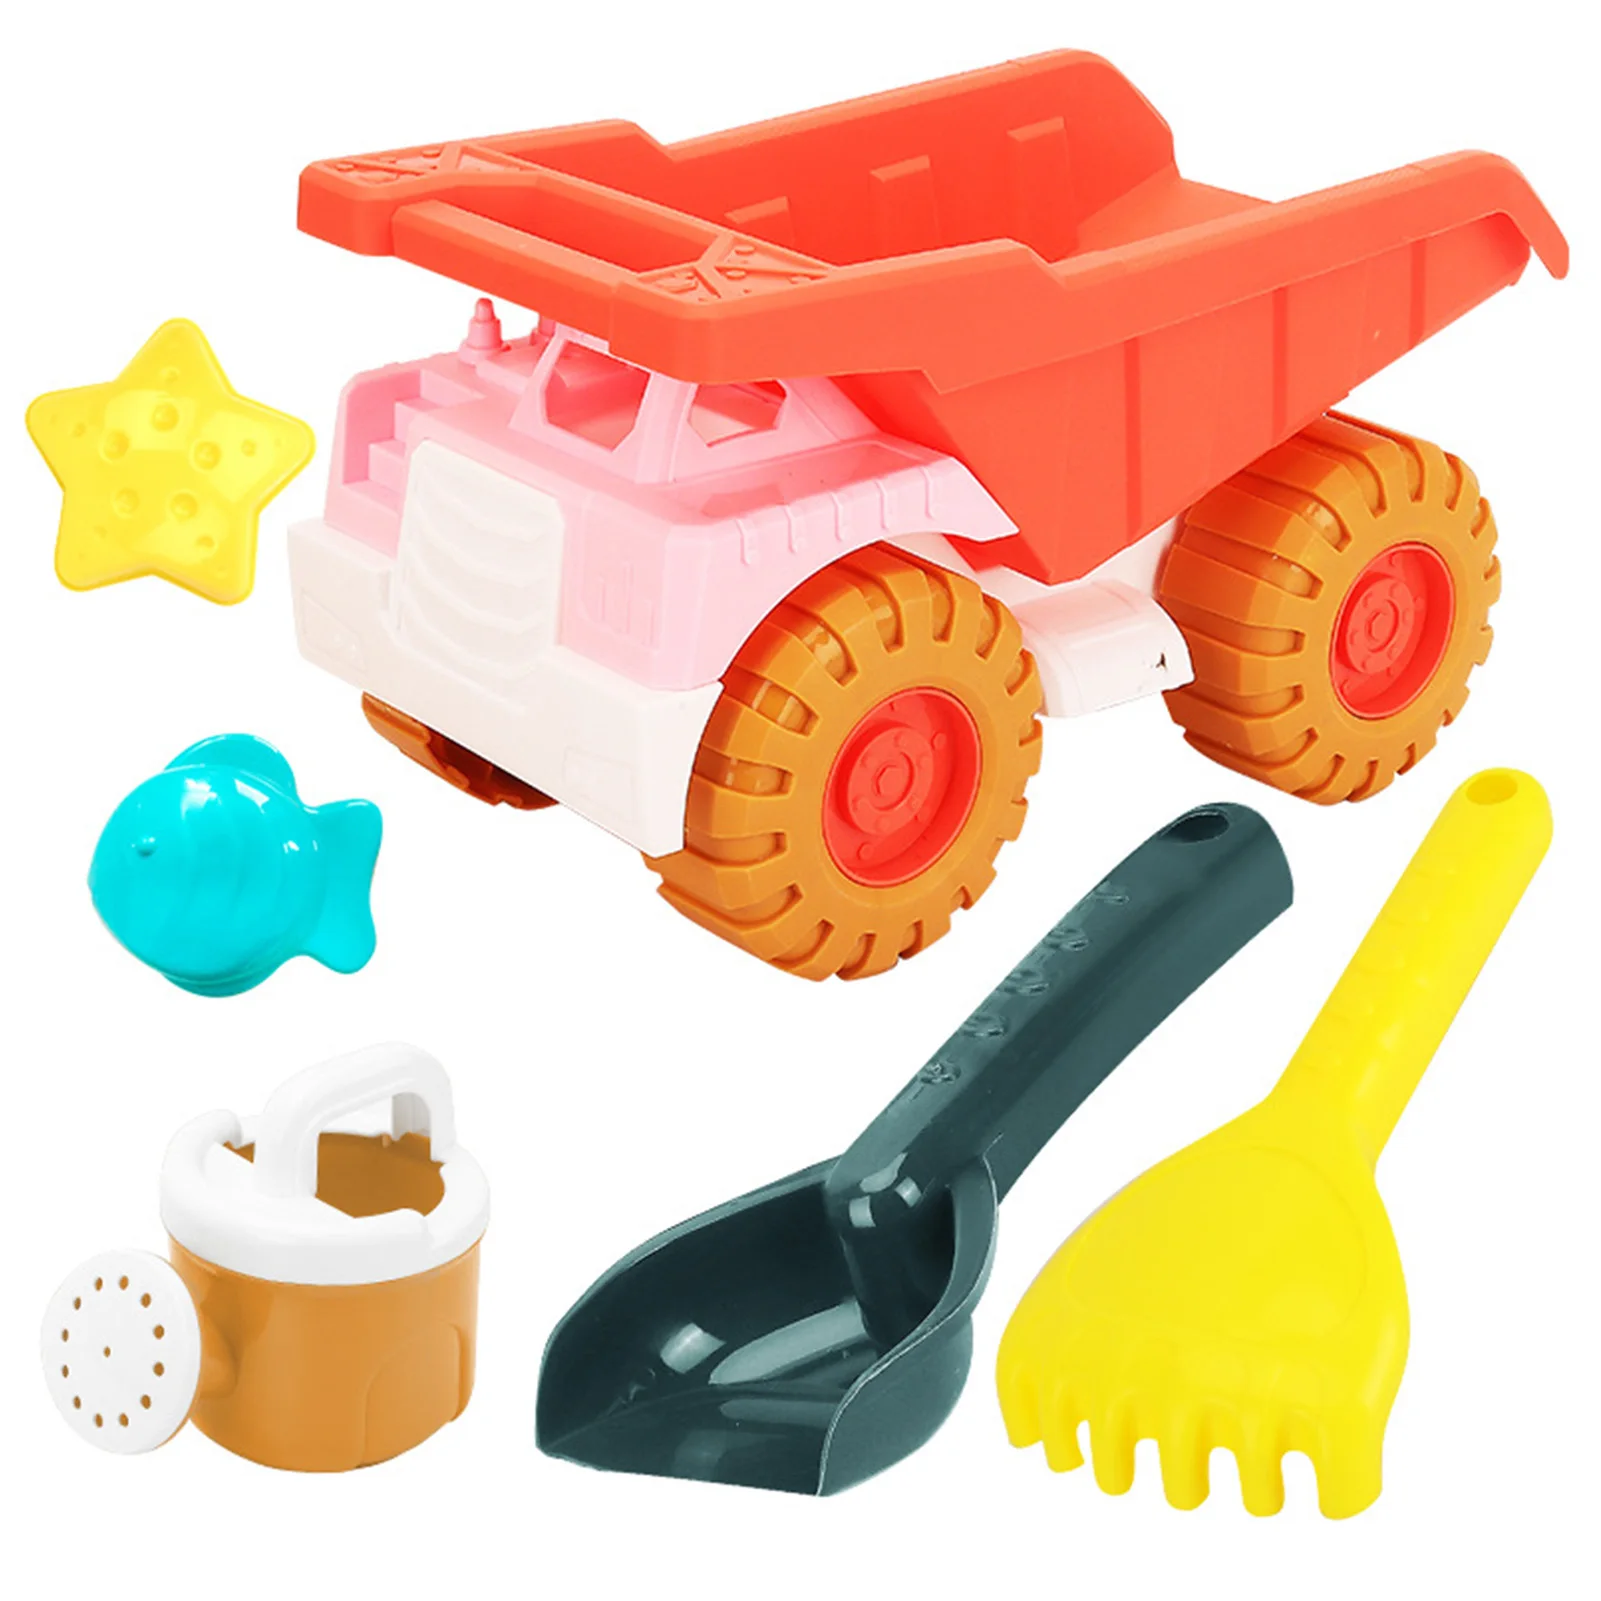 

Набор пляжных игрушек, игрушки для пляжа на открытом воздухе, подарок для малышей, игрушки из нетоксичного песка для детей 3-10 лет